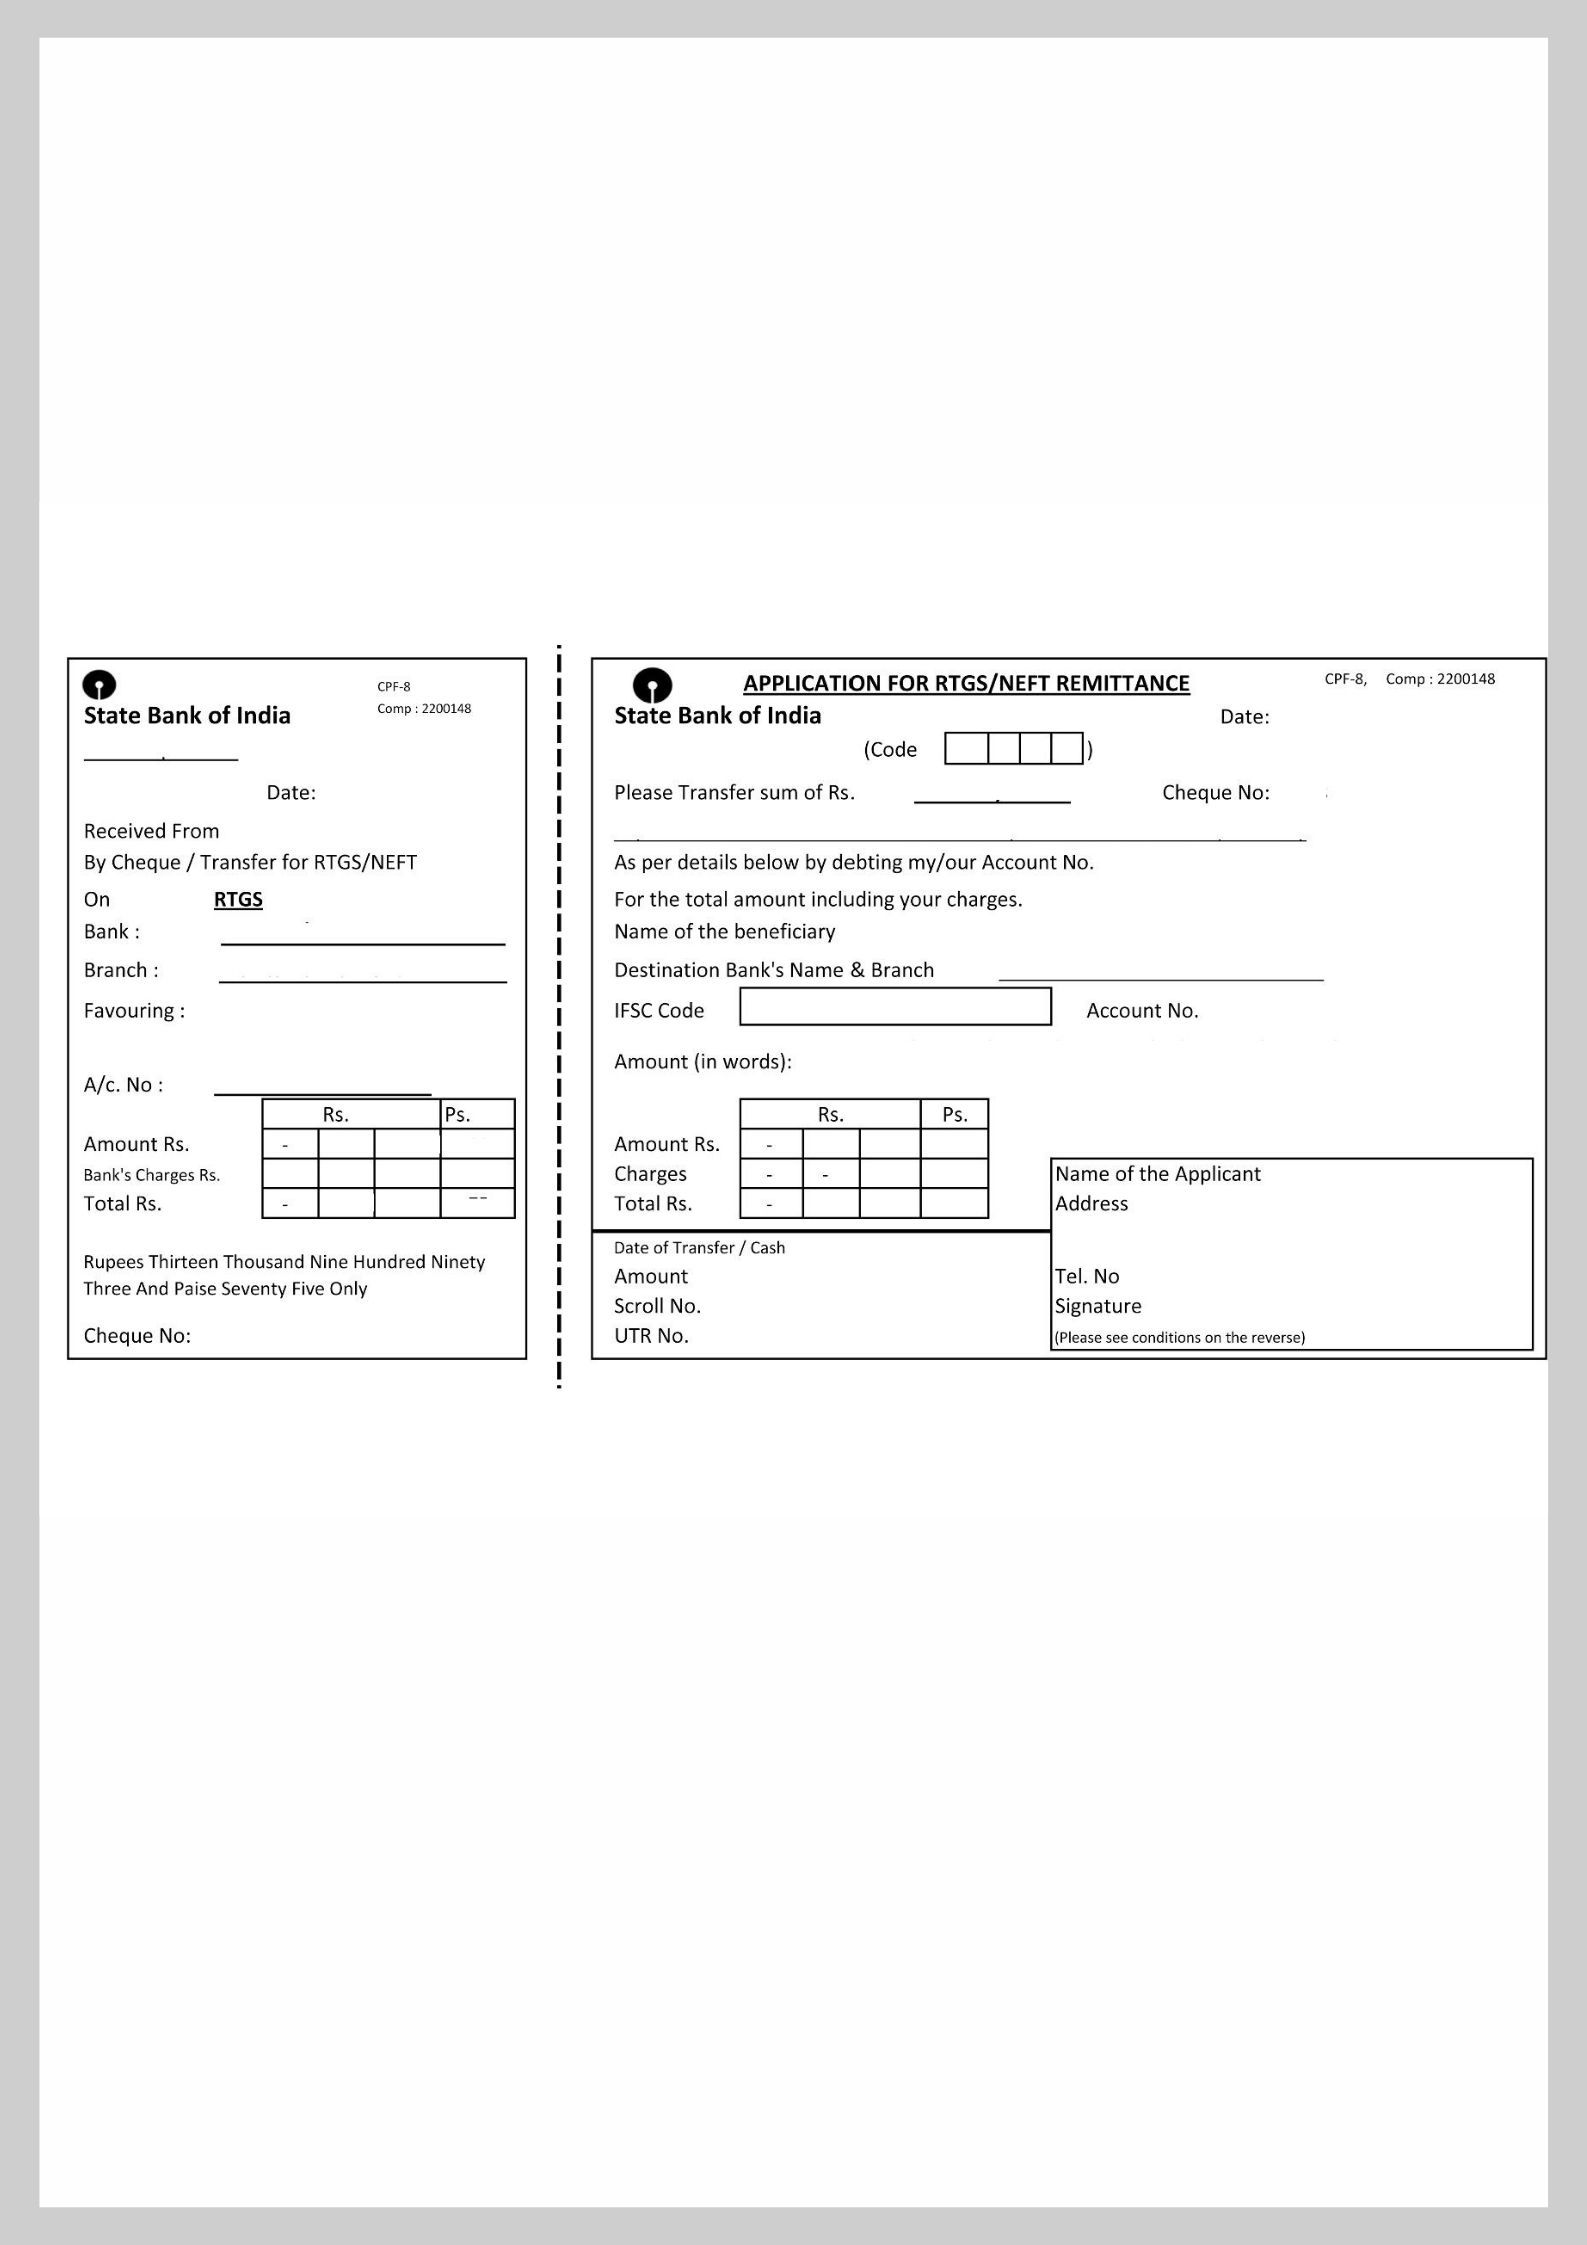 SBI NEFT Form PDF